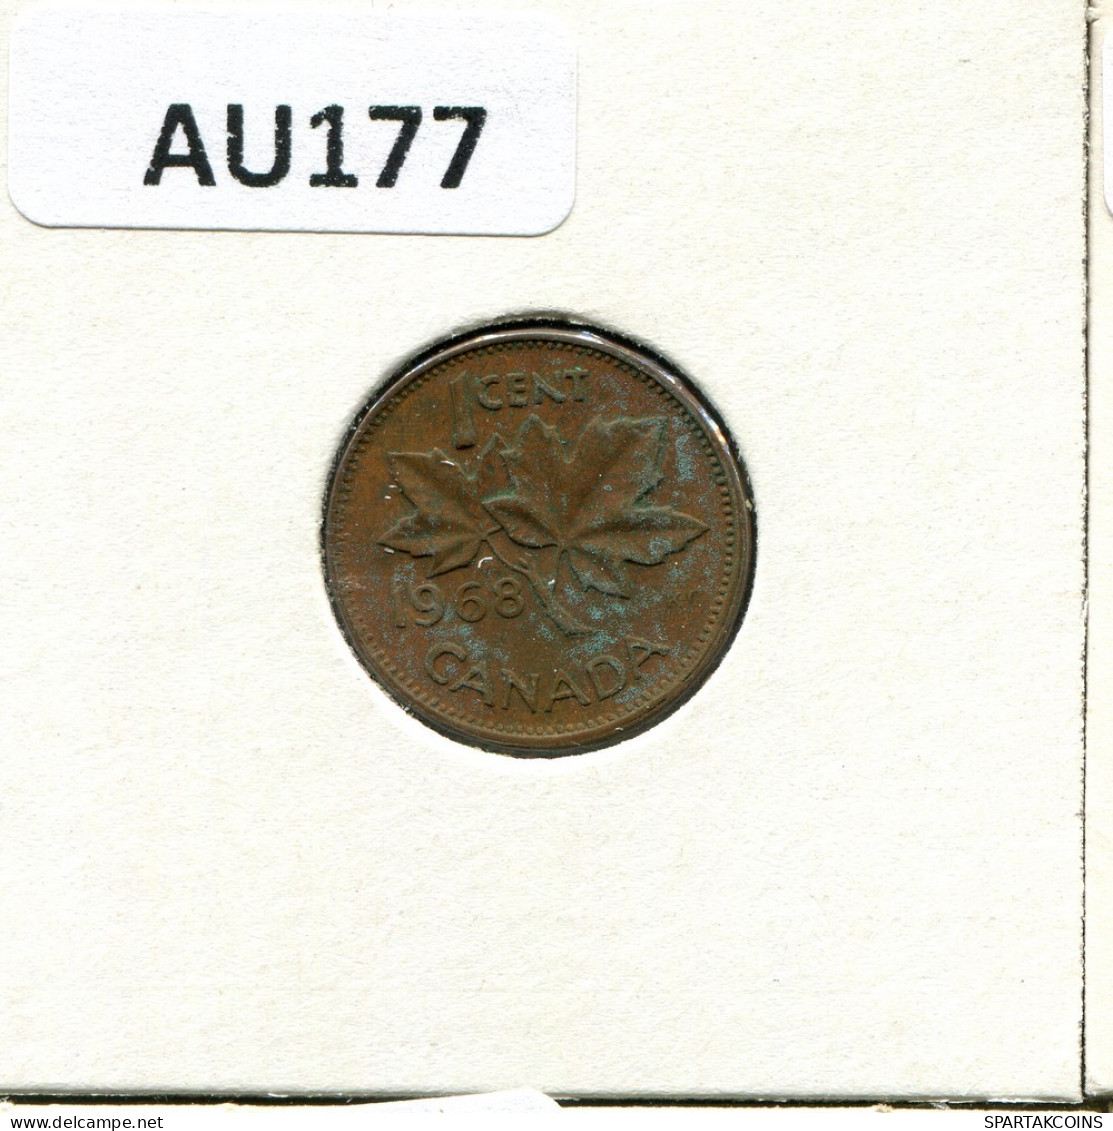 1 CENT 1968 CANADA Moneda #AU177.E.A - Canada